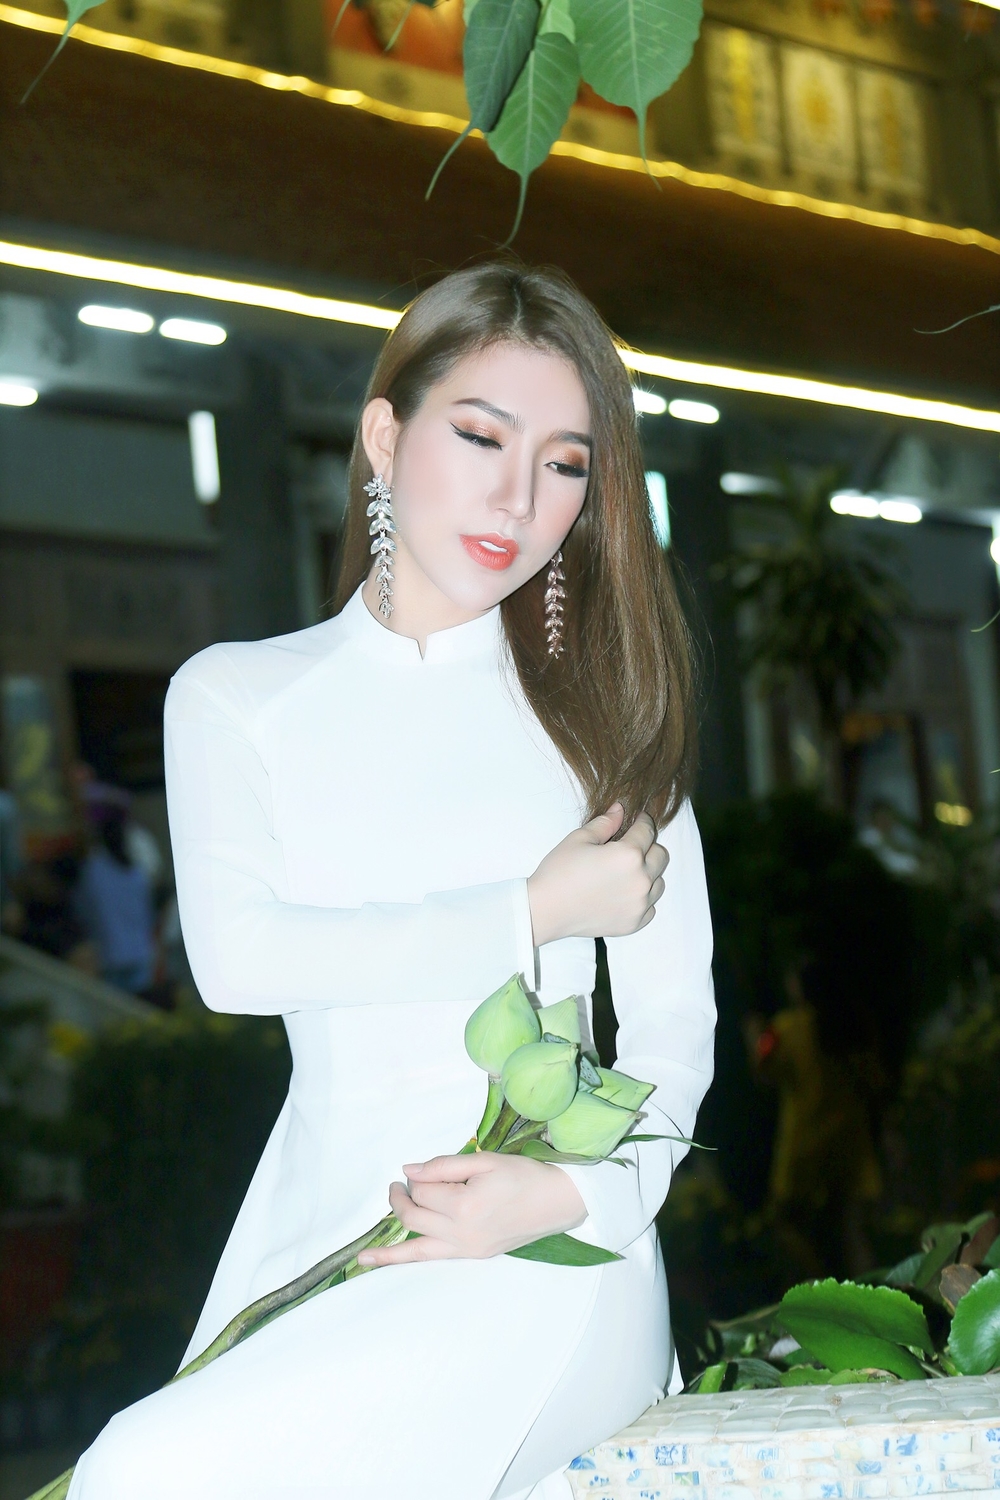 
Hoàng Y Nhung cảm ơn 2018 đã mang đến cho mình nhiều may mắn, đặc biệt là đạt ngôi vị cao nhất của cuộc thi Hoa Hậu Sắc Đẹp Toàn Cầu - Miss Beauty Global tại Thailand. Bên cạnh đó, người đẹp còn chia sẻ đã mua thêm 1 căn nhà ưng ý và kịp hoàn thành nó đúng dịp chào đón năm mới.